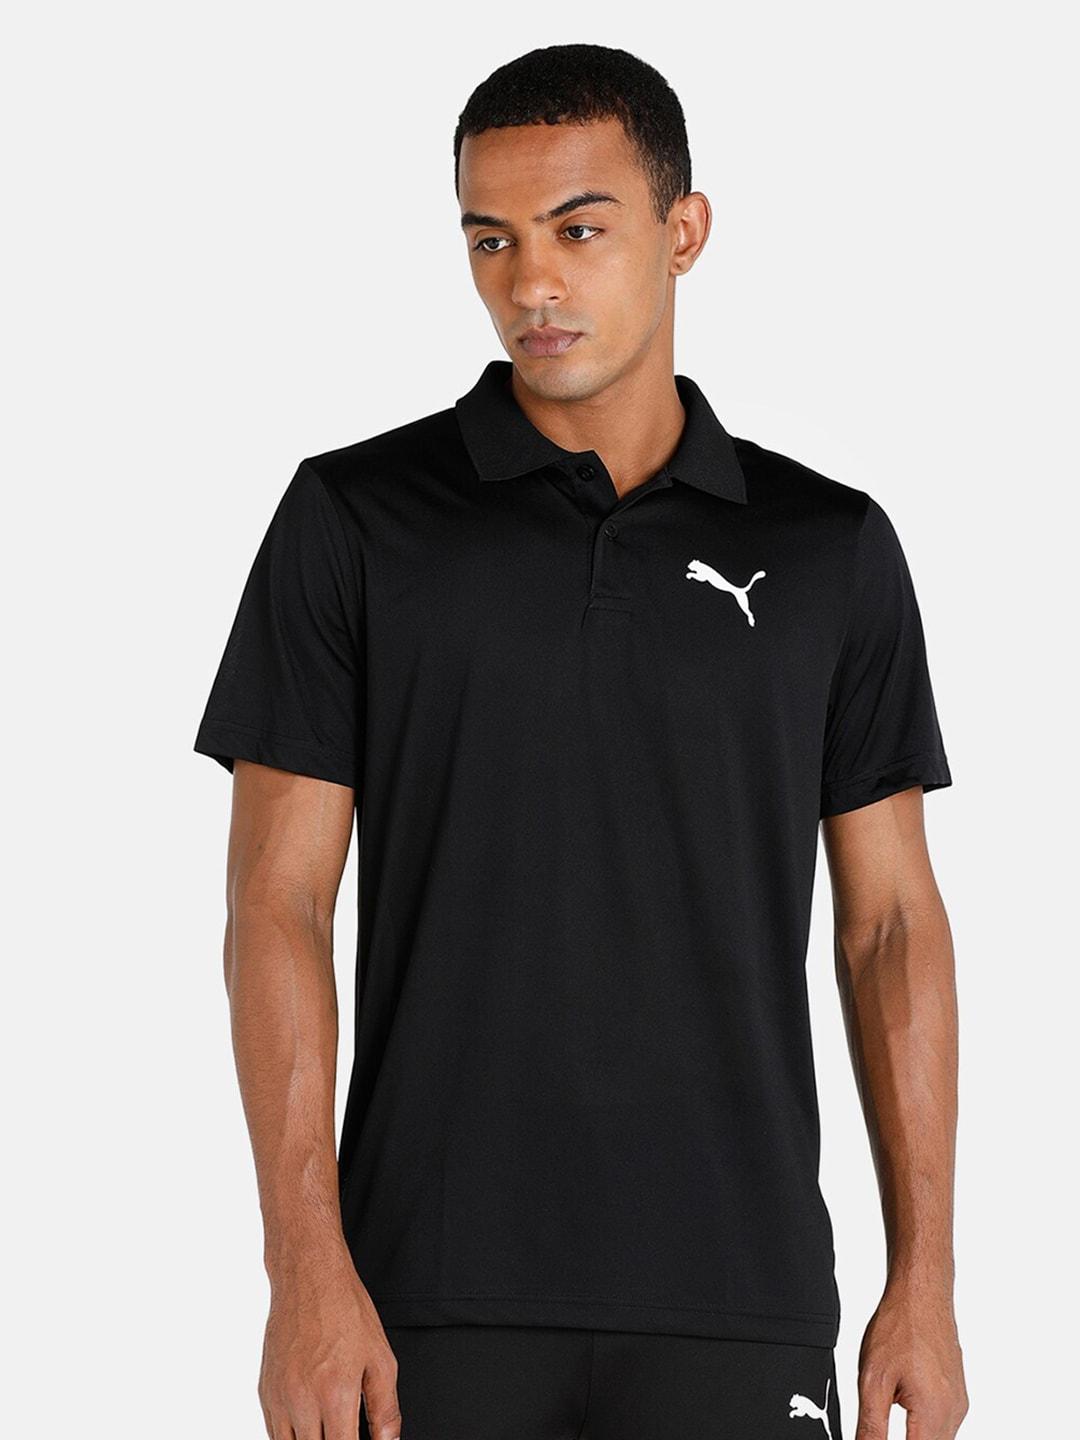 Puma Men Black Sports Polo Tshirt